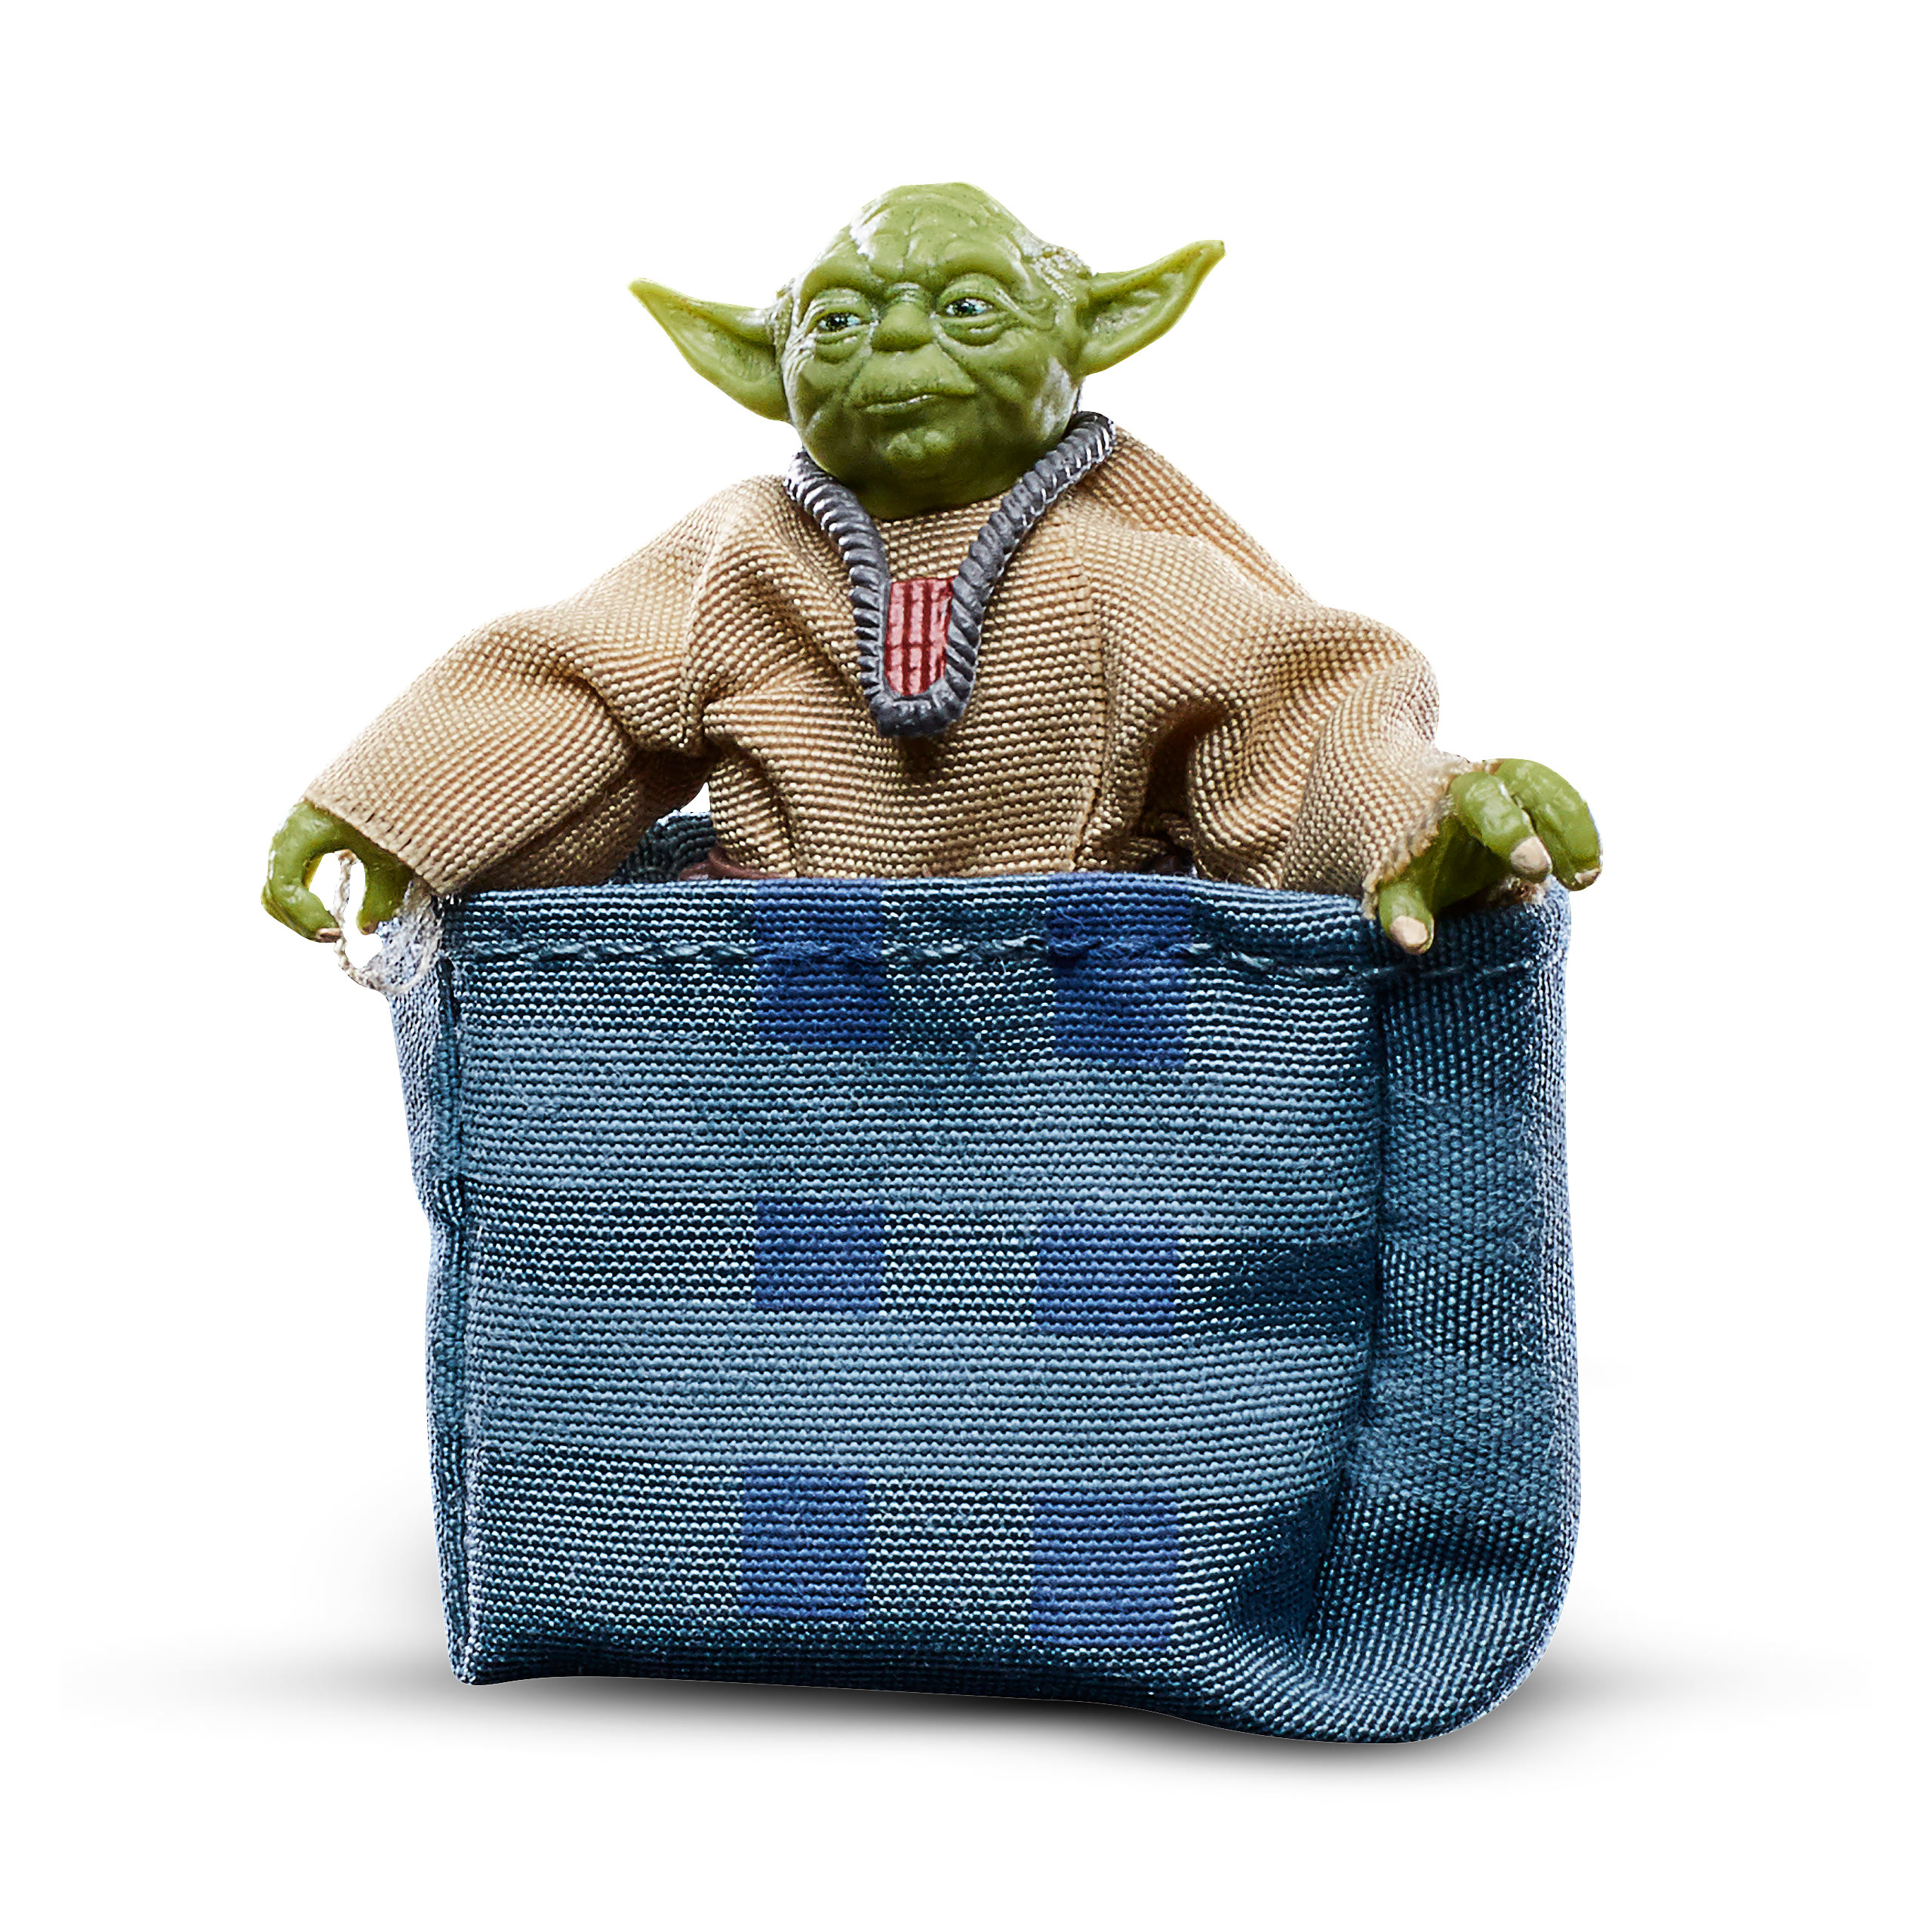 Star Wars - Yoda Dagobah Actiefiguur 5 cm